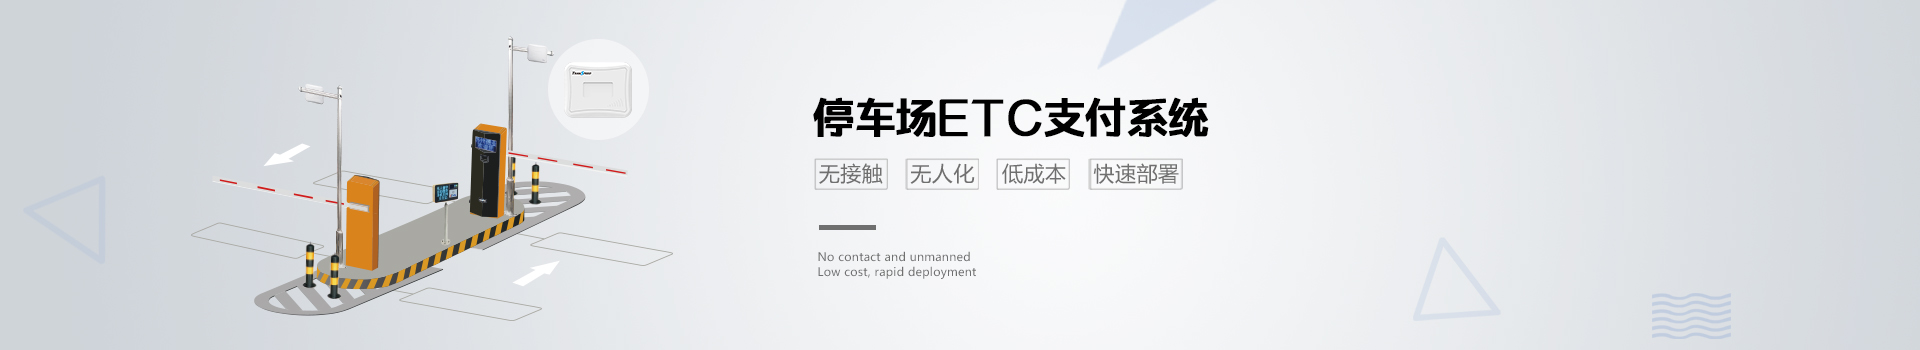 南宁ETC定制-价格-供应商图片